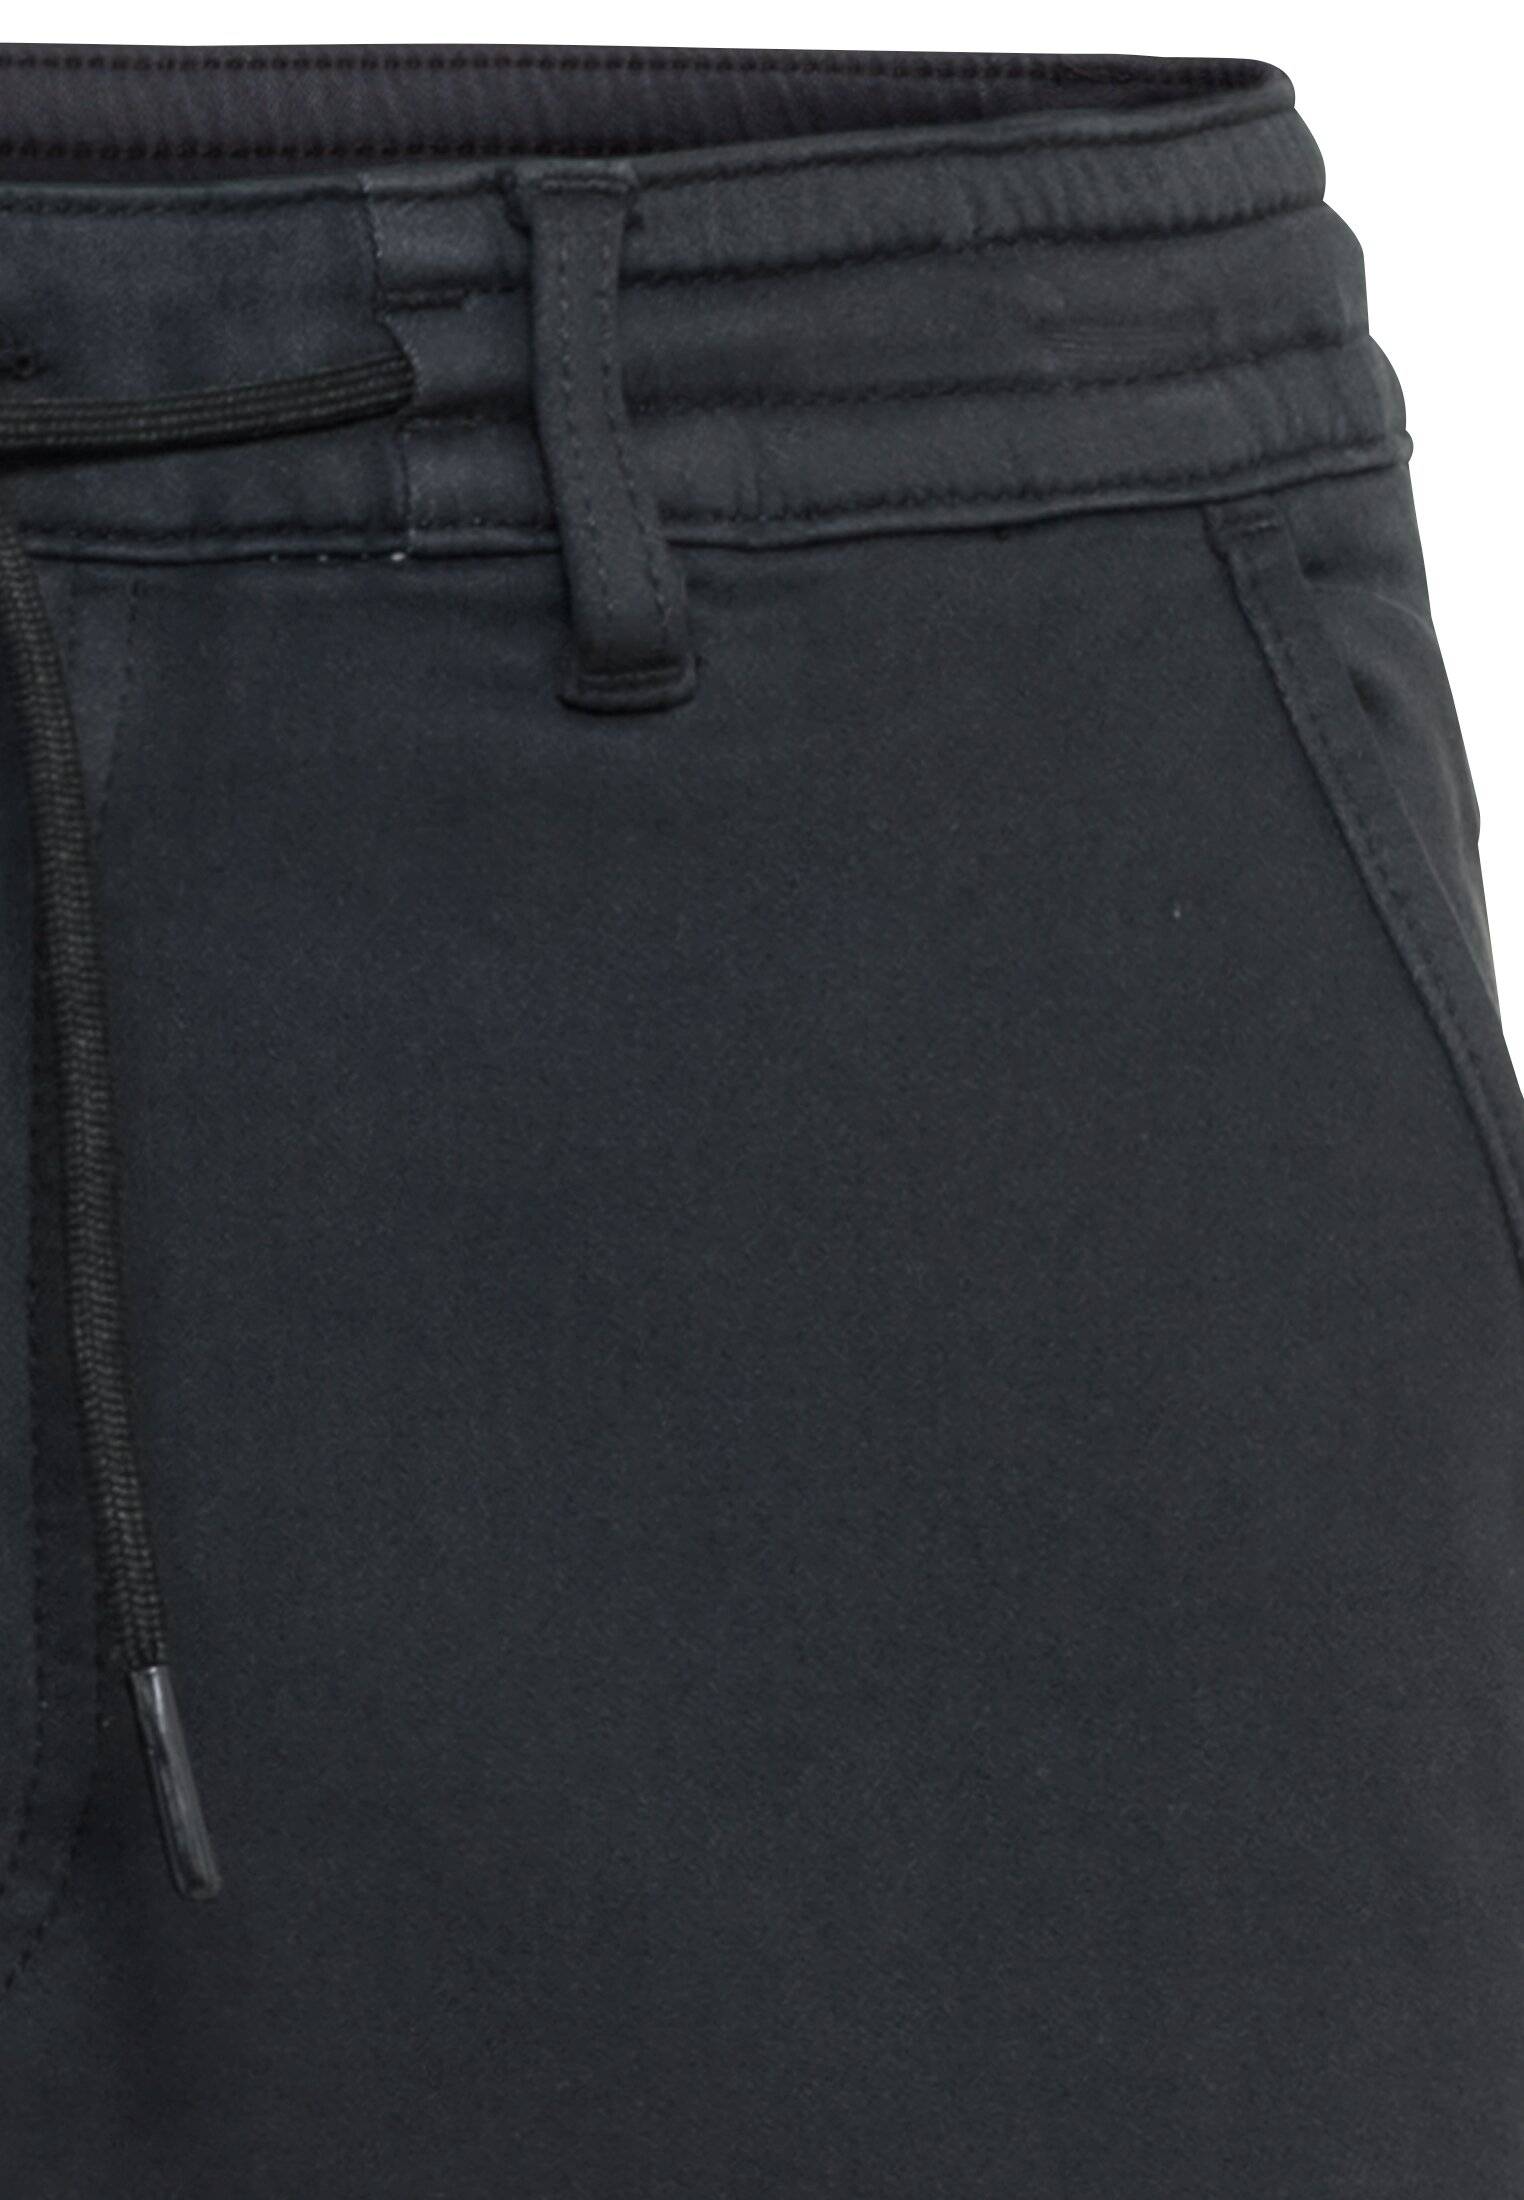 Мужские брюки Camel Active, серые, цвет серый, размер 40 - фото 3